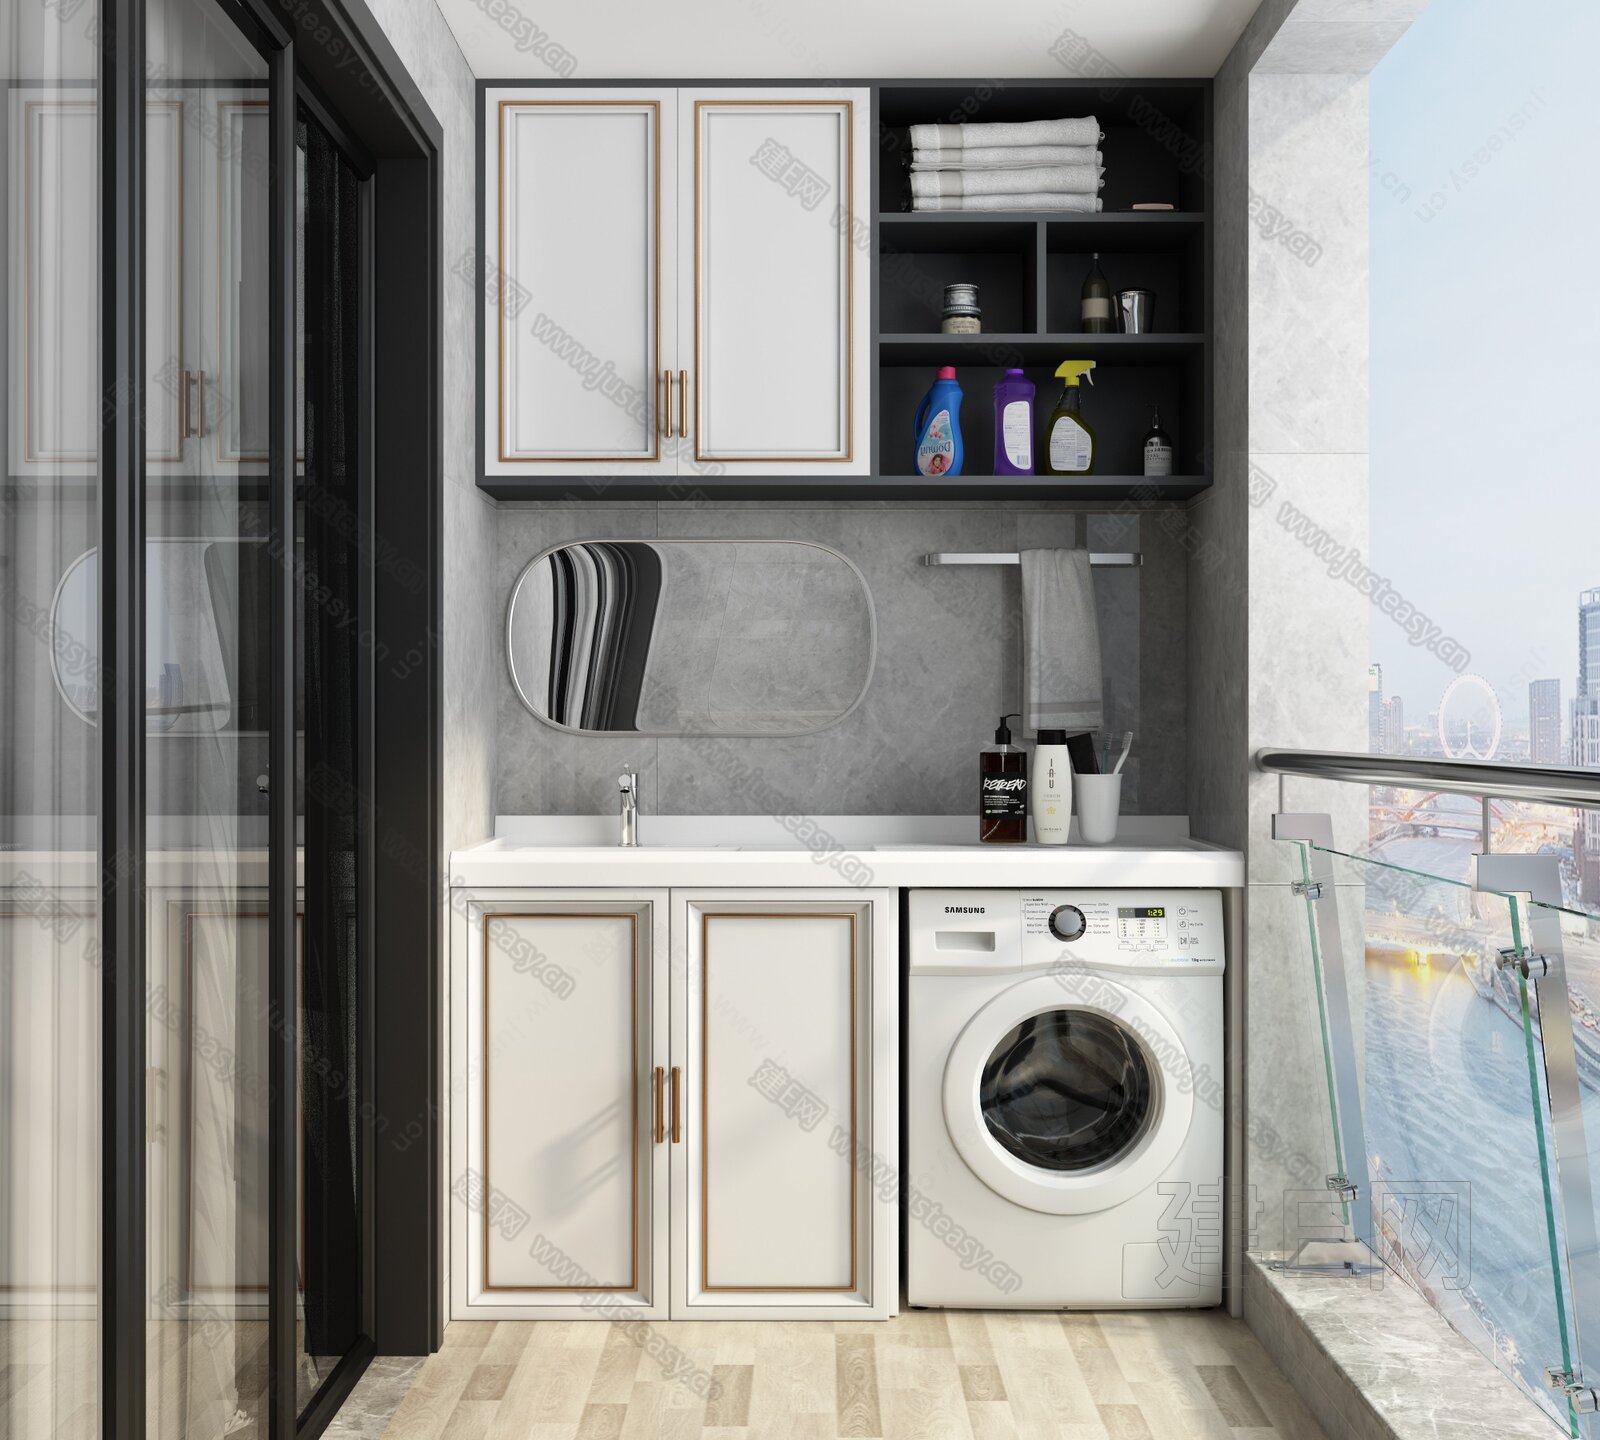 2019家庭洗衣房装修风格流行趋势 看10款洗衣房图片 - 今日头条 - 装一网